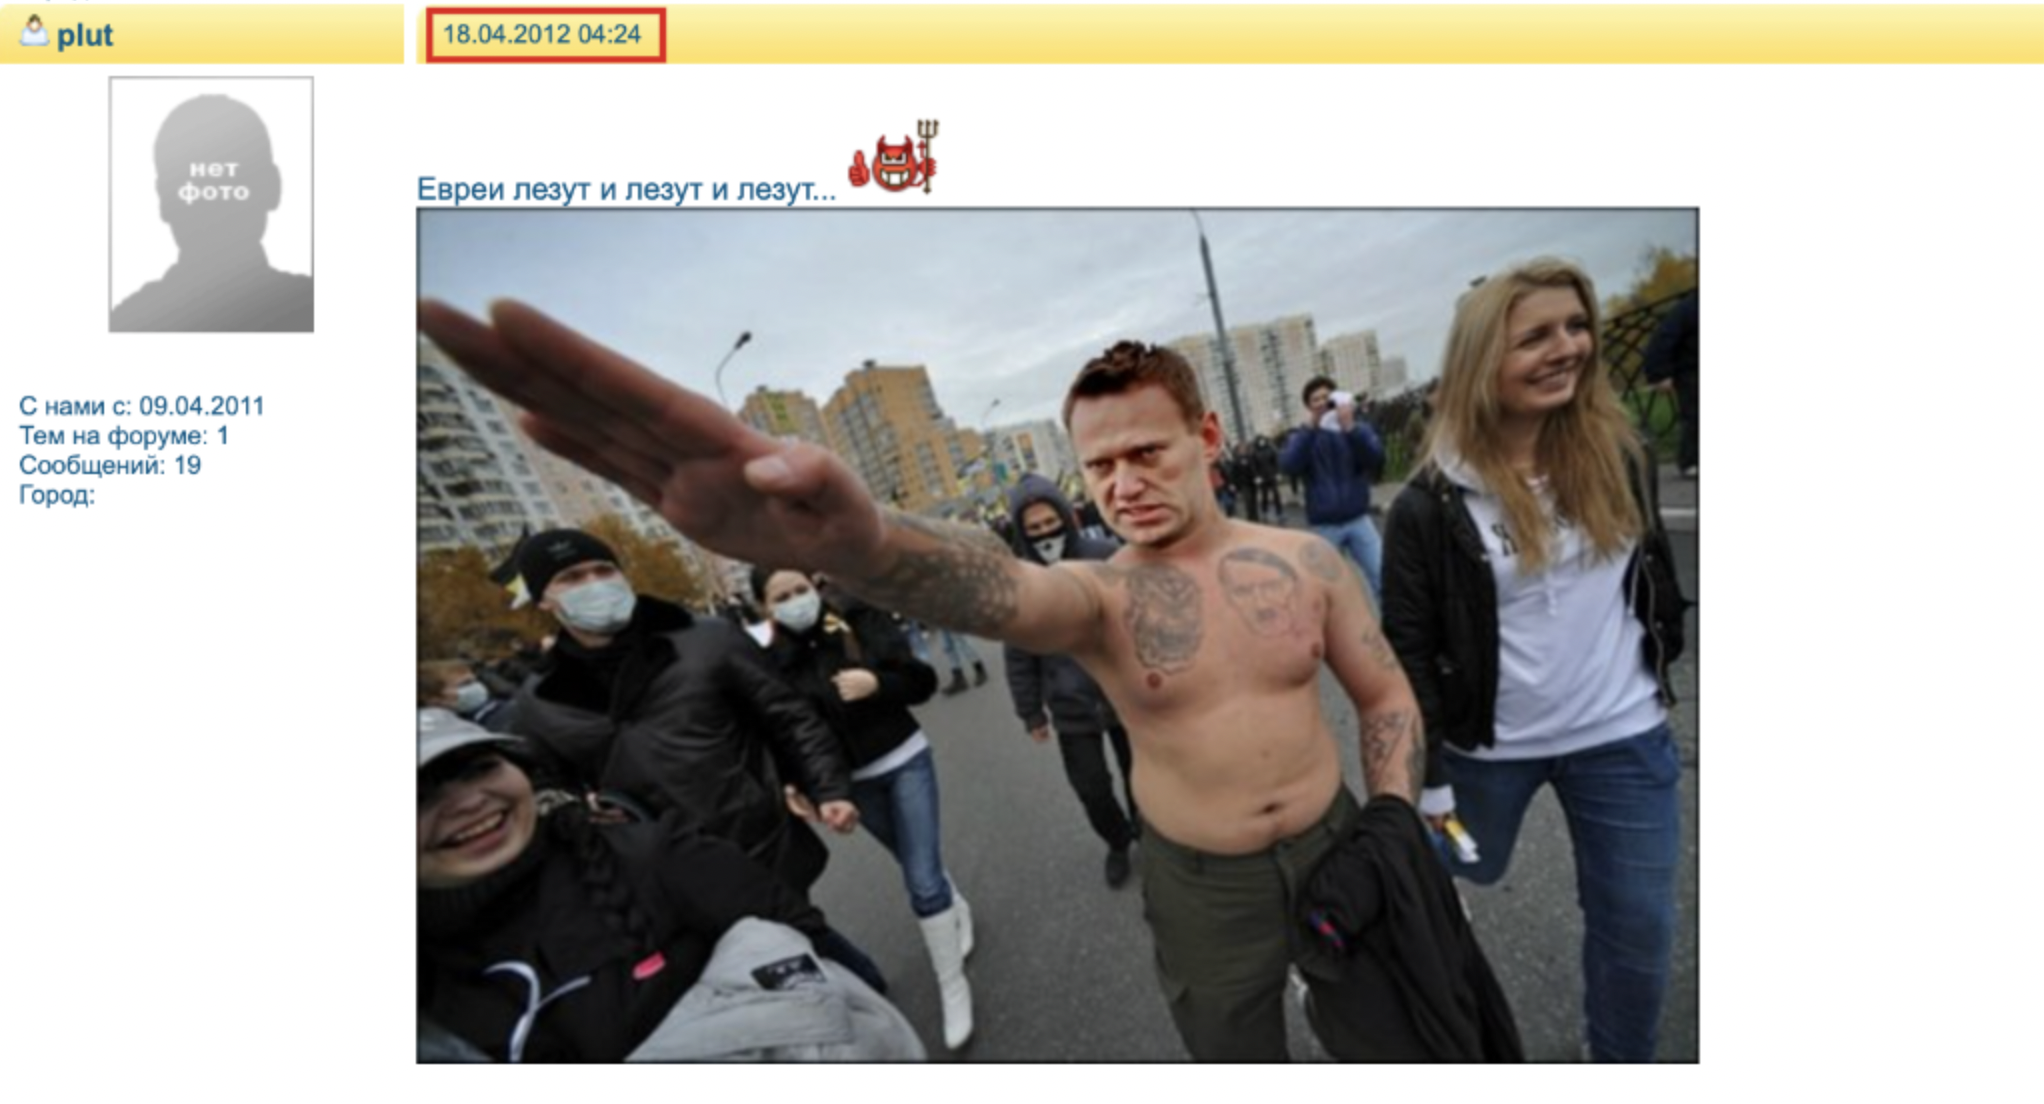 Dies ist ein Screenshot eines Beitrags im russischen Forum pk25 vom 18. April 2012, der das mit Photoshop bearbeitete Bild von Nawalny beim Nazi-Gruß zeigt.